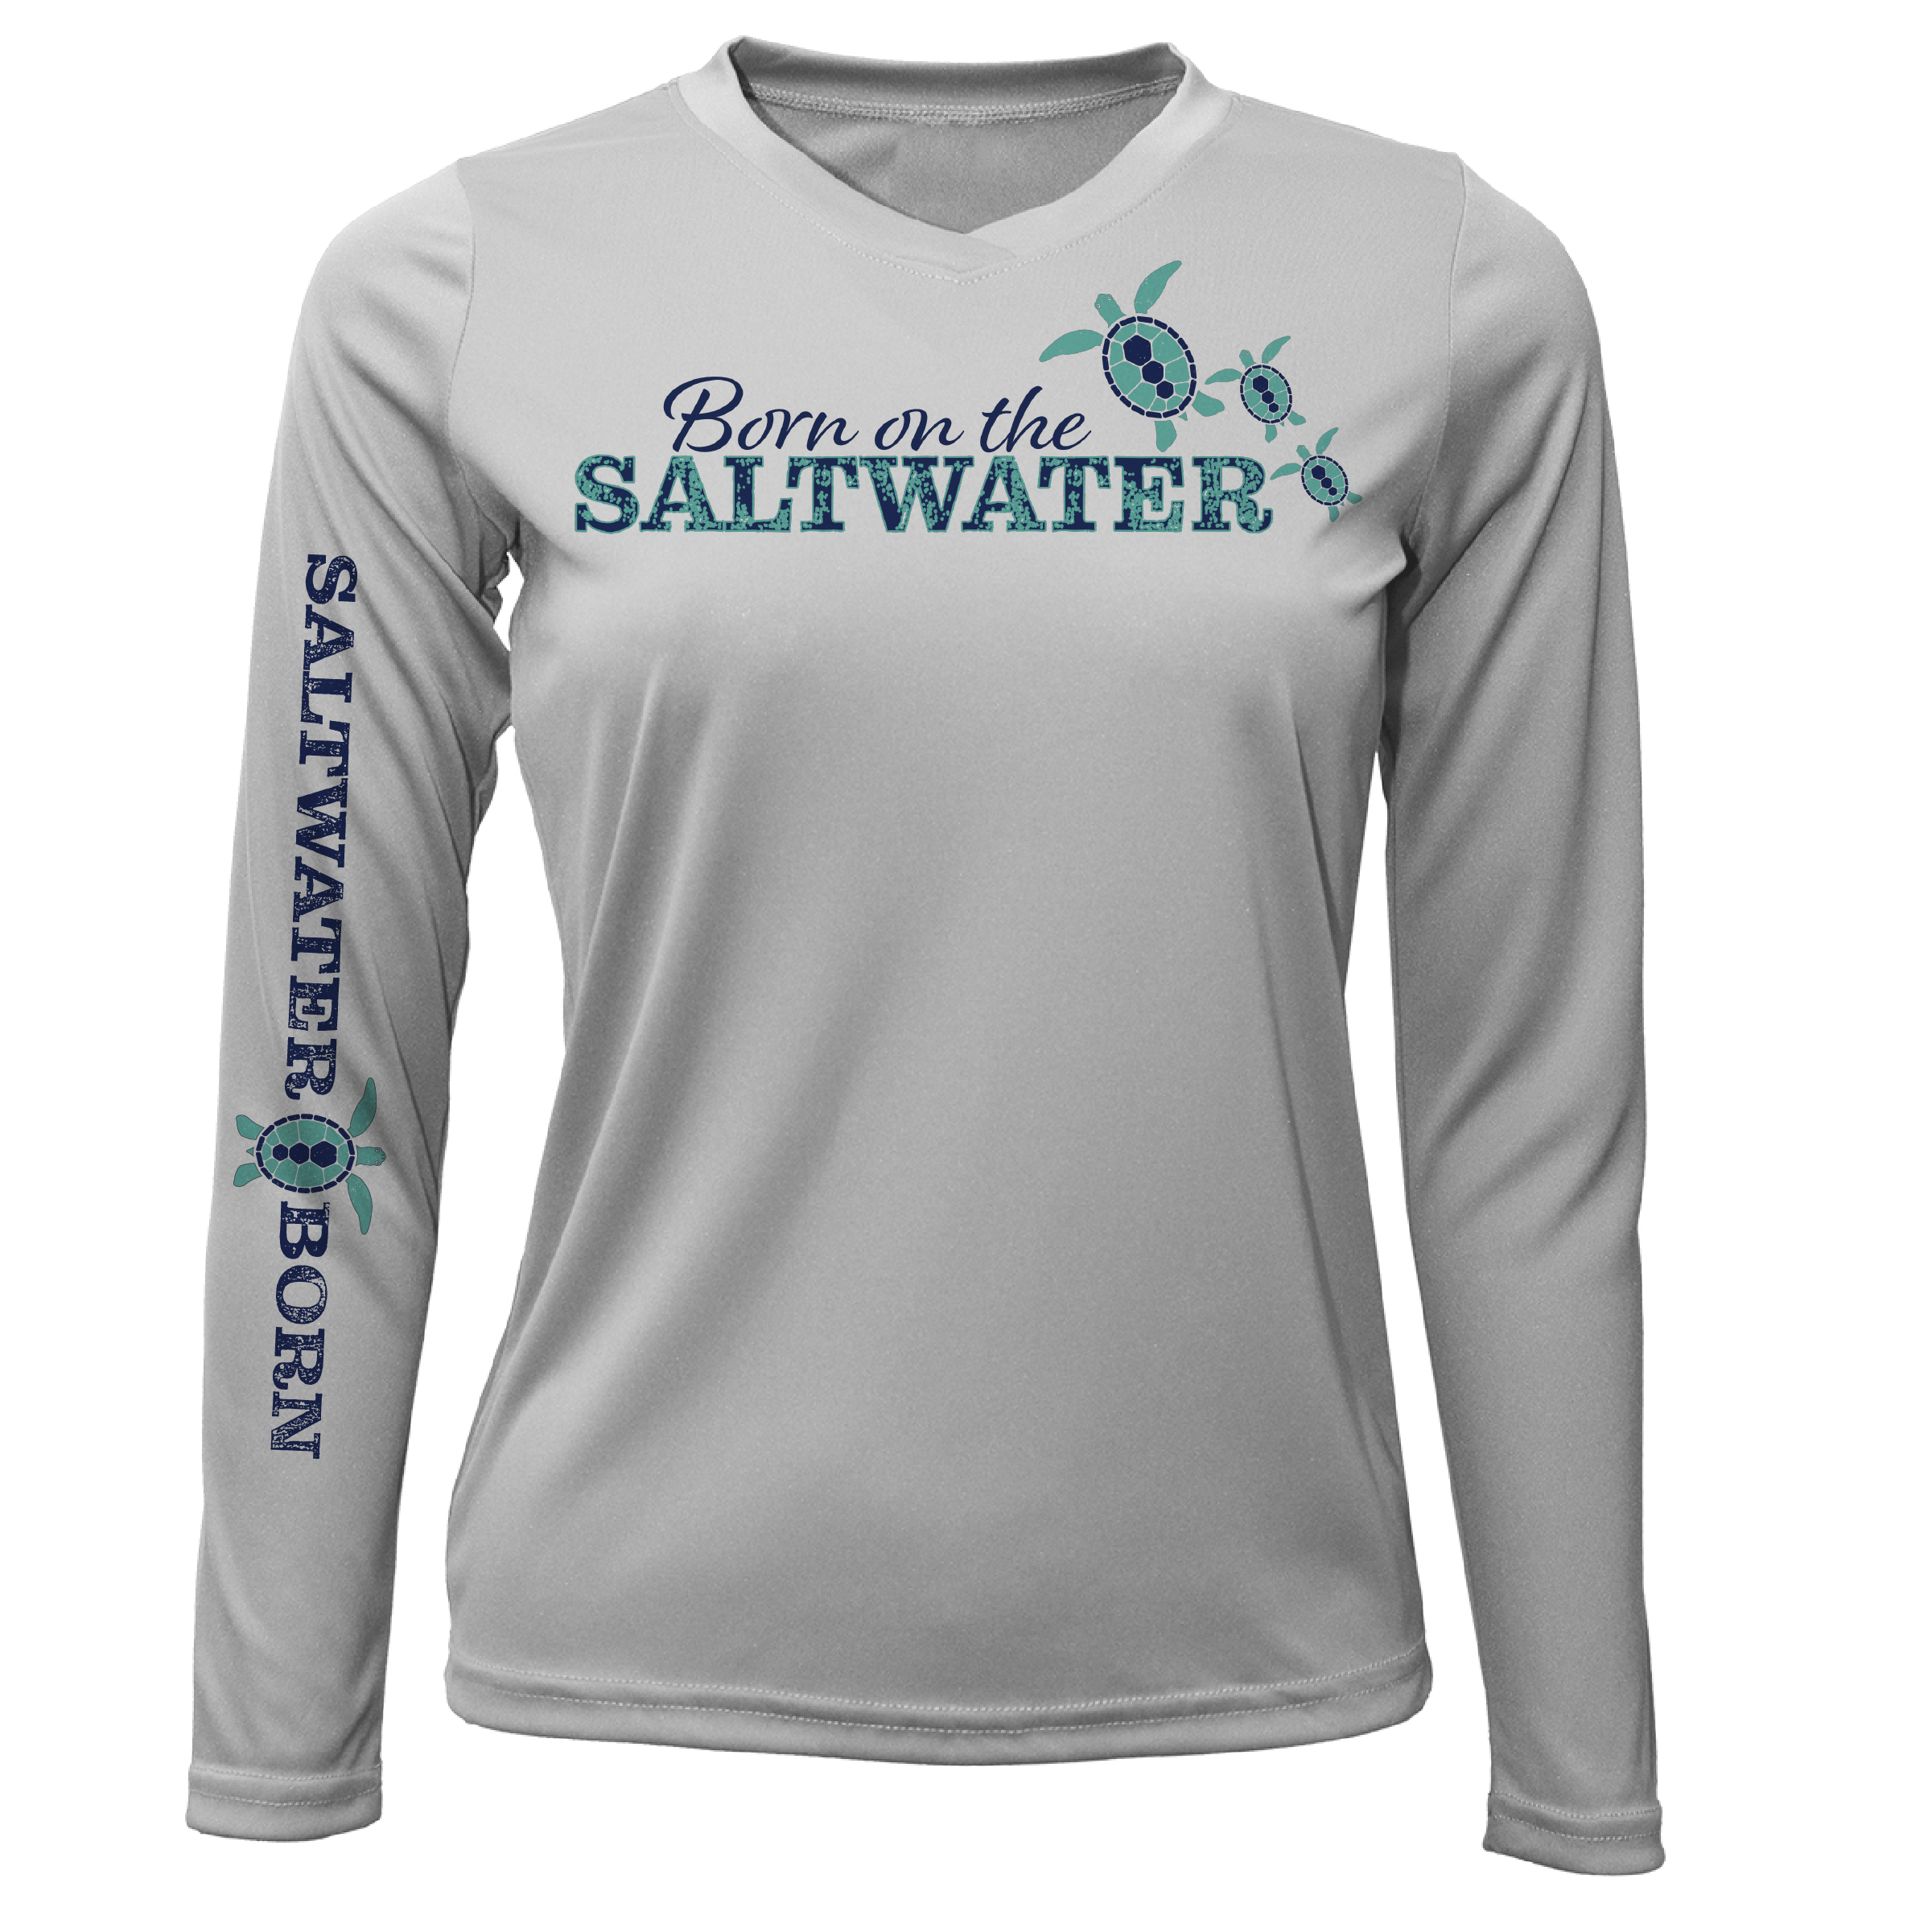 Saltwater Shirts